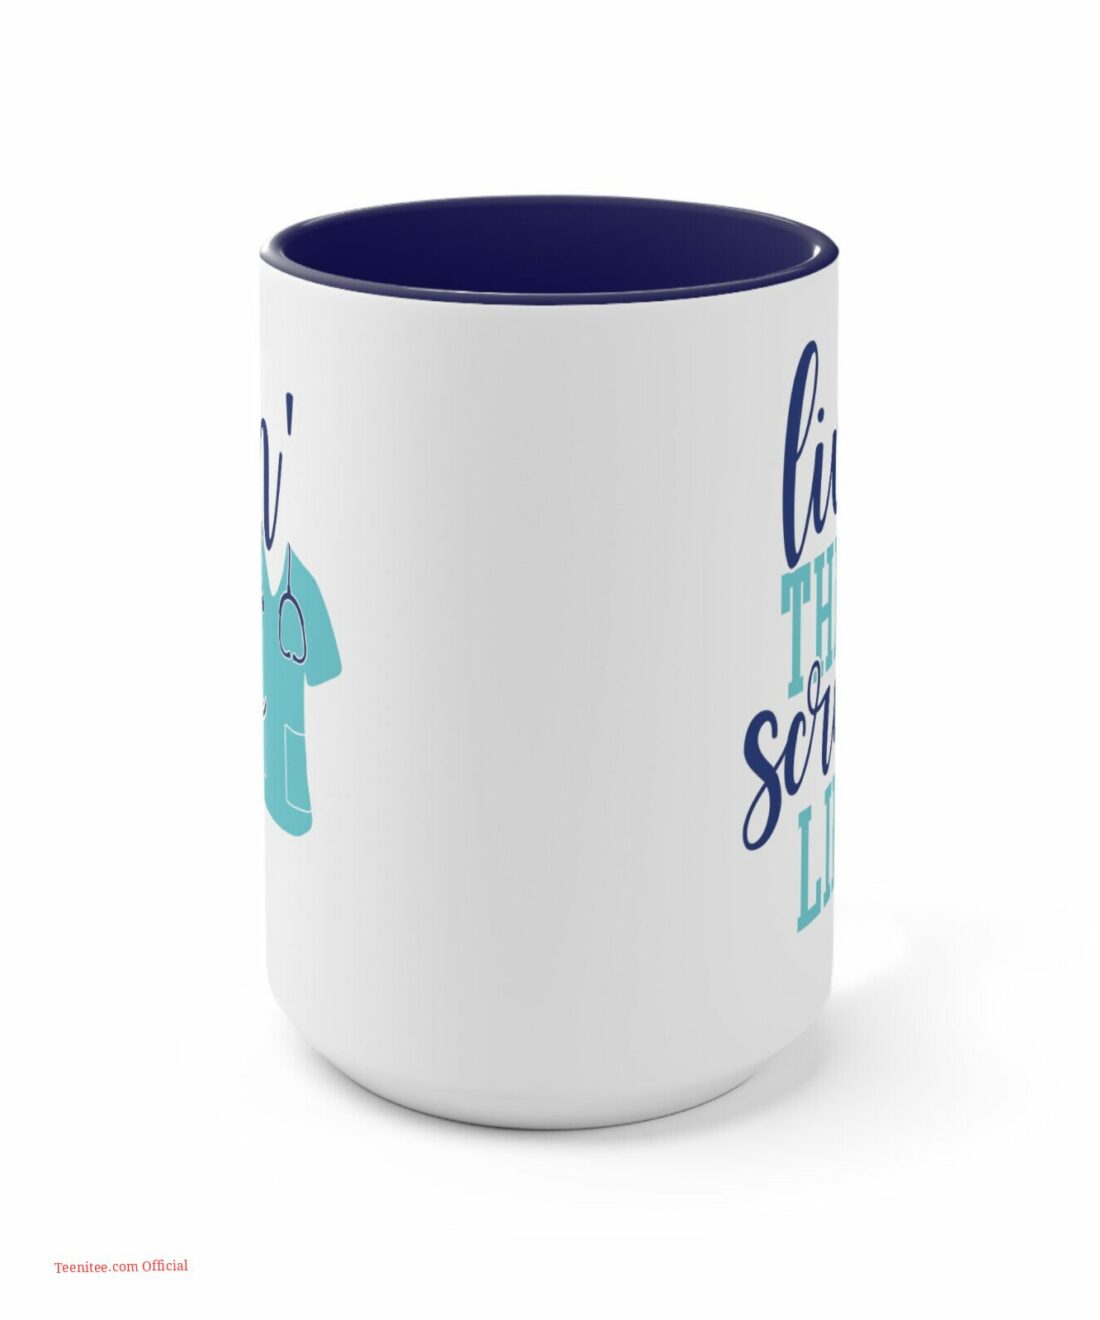 Livin the scrub life| lovely mug gift for nurse